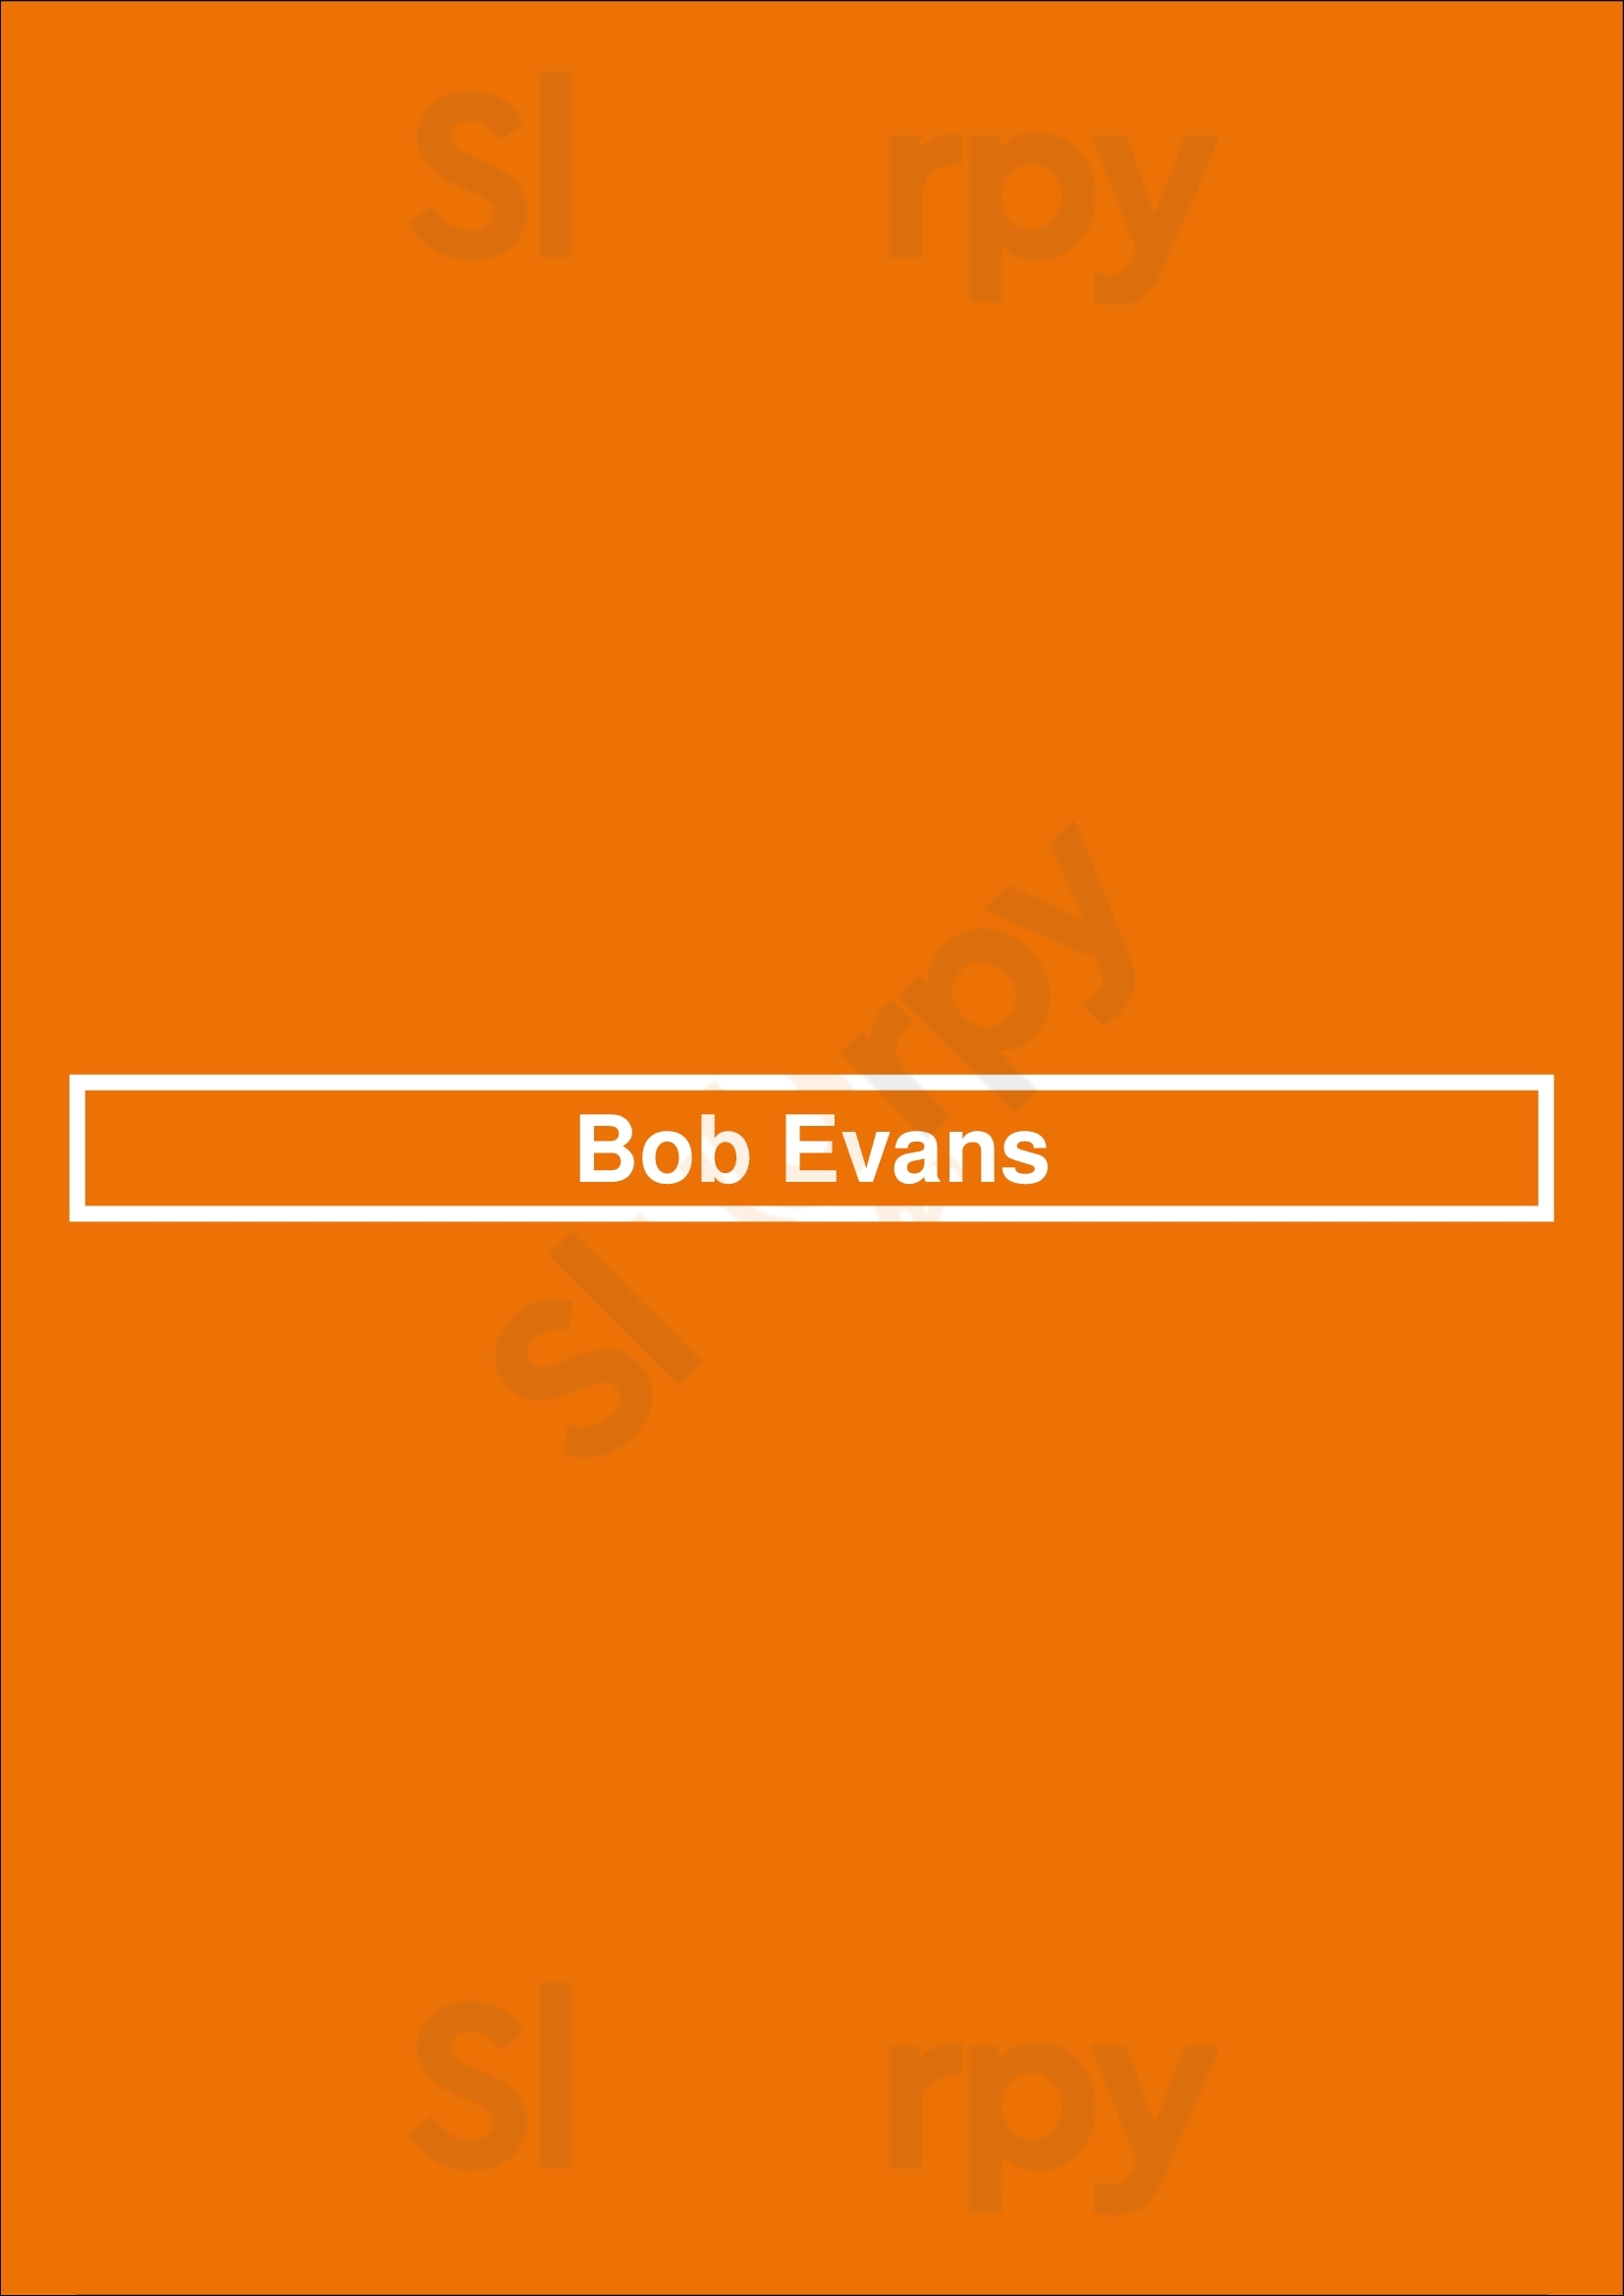 Bob Evans Maumee Menu - 1